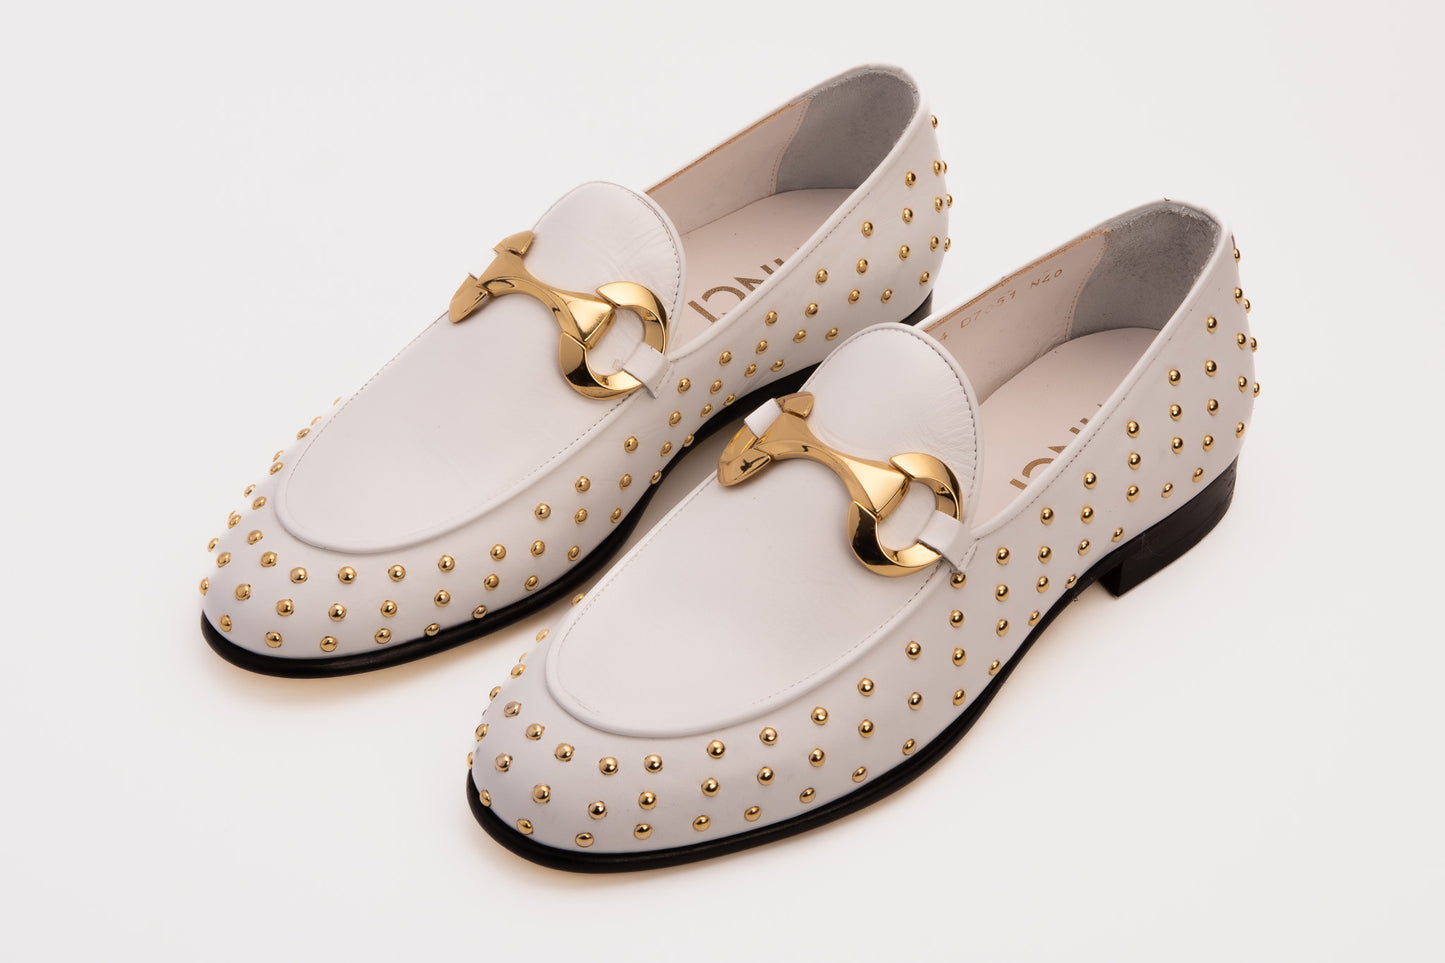 The Jupiter  Shoe White Spike Leather  Bit Dress Loafer Limited Edition Men Shoe